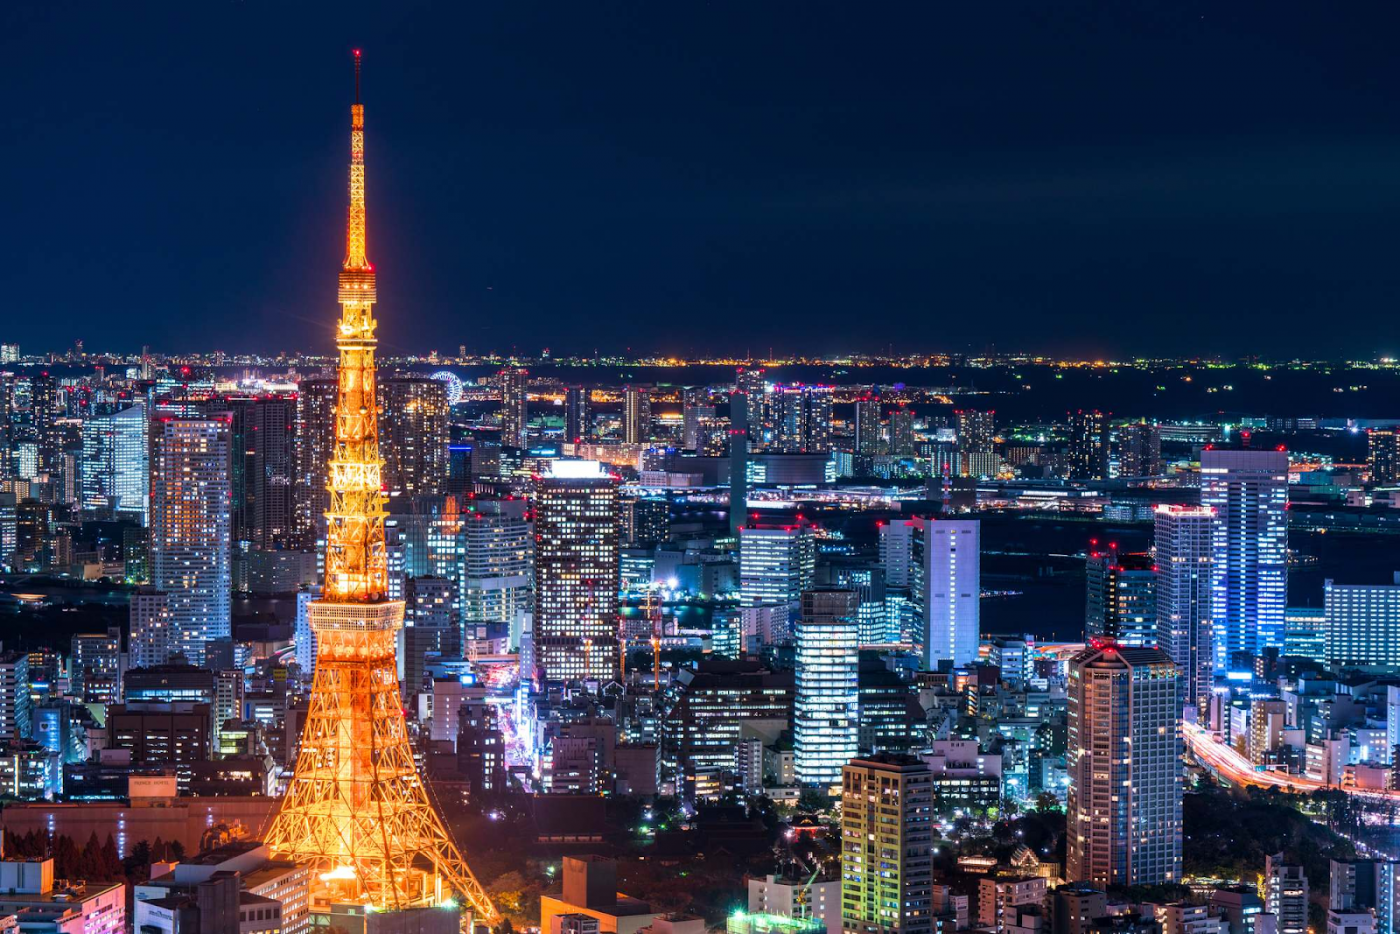 Bỏ túi kinh nghiệm du lịch Nhật Bản từ A-Z: vi vu xứ xở hoa anh đào